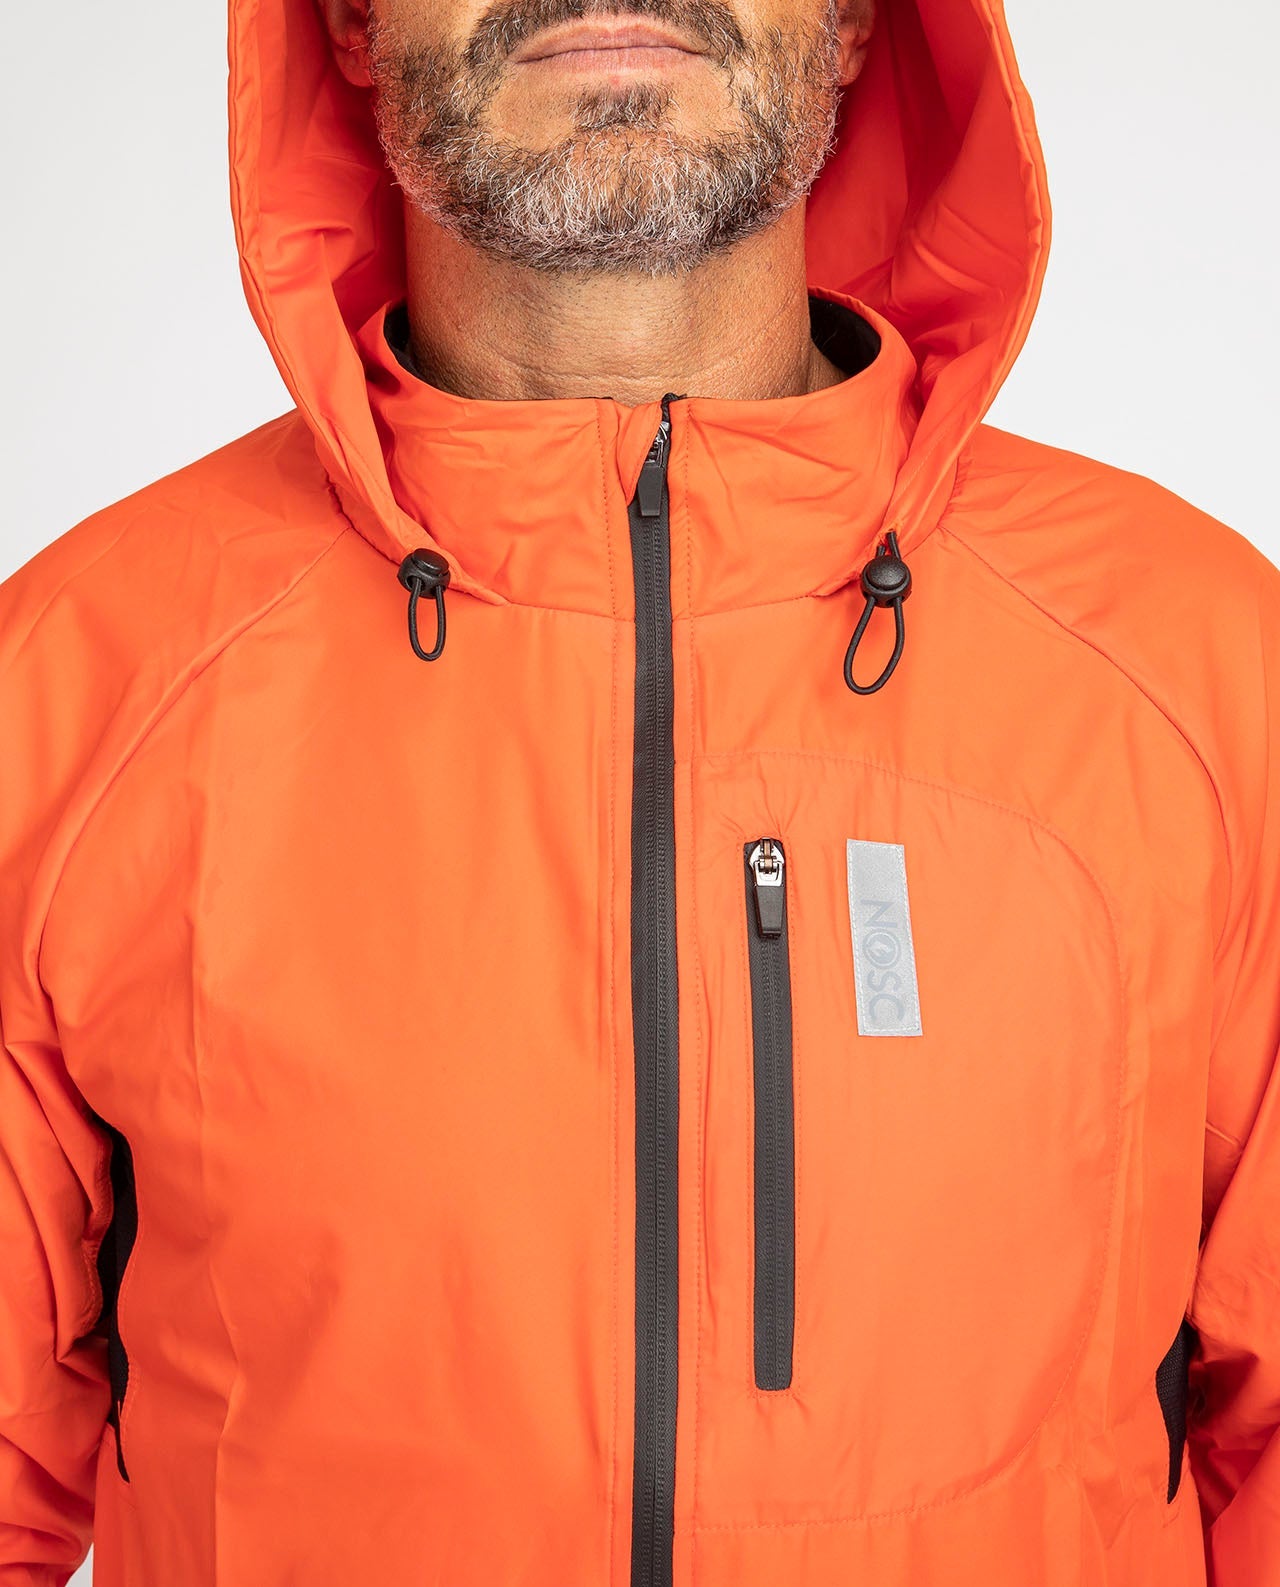 marché commun nosc veste de sport homme coupe vent déperlante recyclée fabriquée en Europe éco-responsable éthique orange